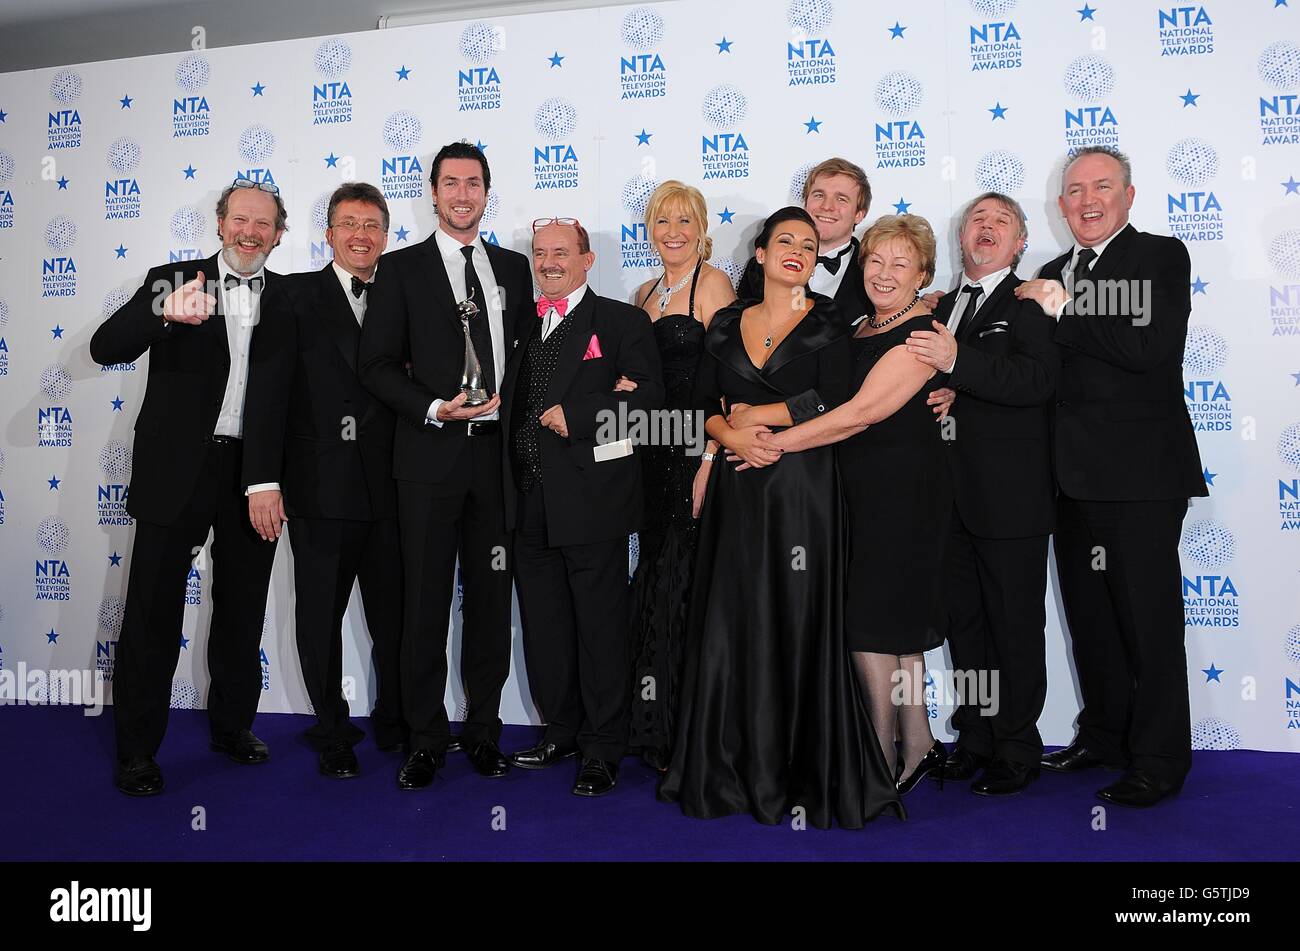 Casting et équipage de Mme Brown's Boys avec leur prix de la meilleure situation Comedy, dans la salle de presse des National Television Awards 2013 à l'O2 Arena, Londres. Banque D'Images